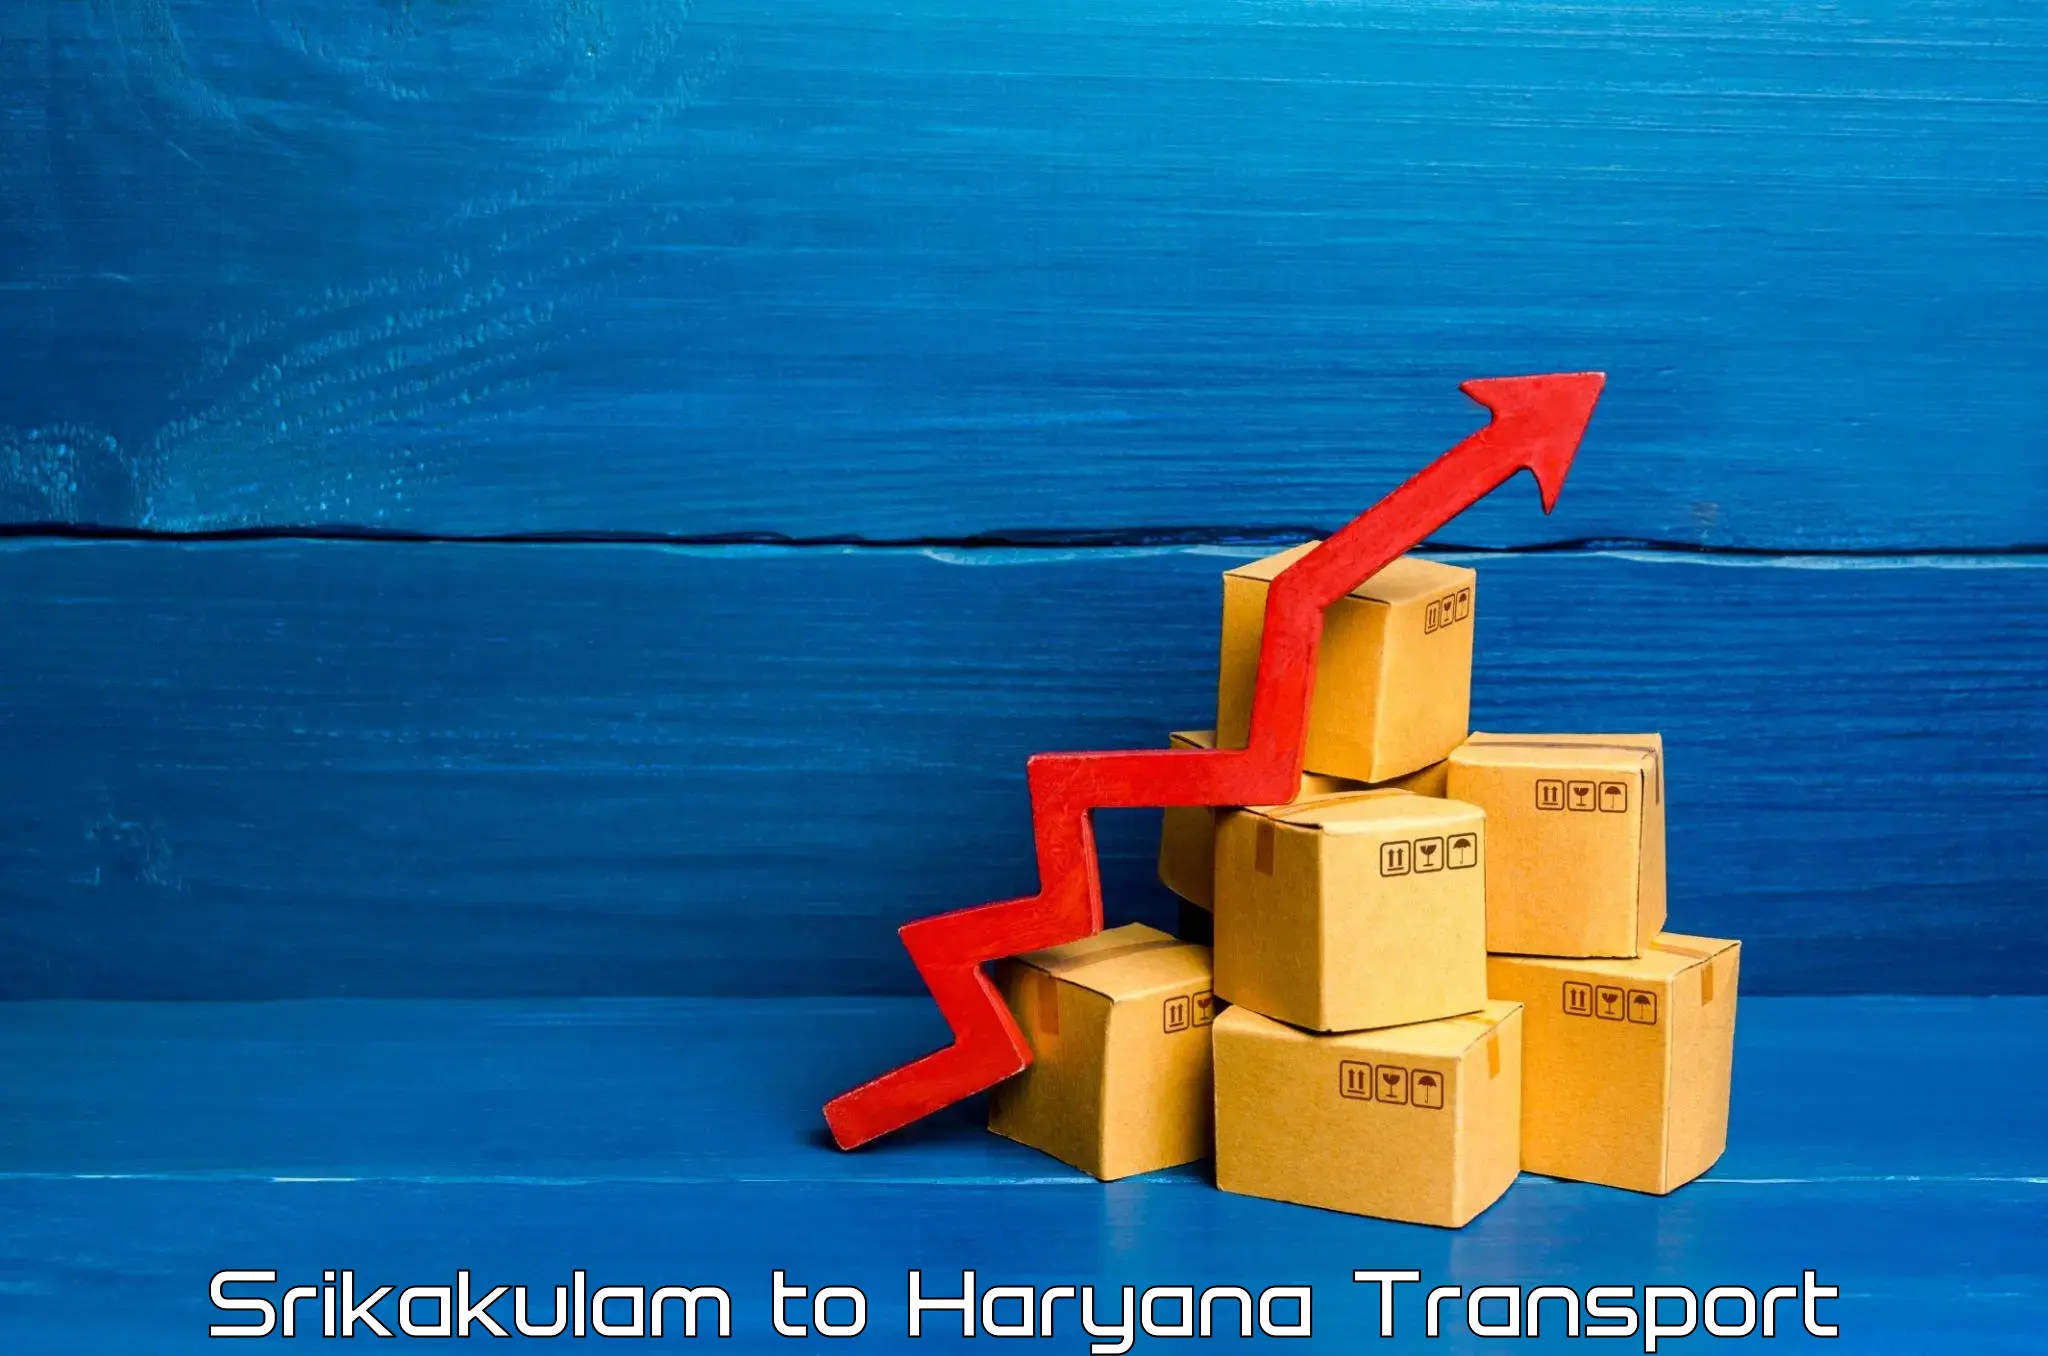 Transport in sharing Srikakulam to Narwana